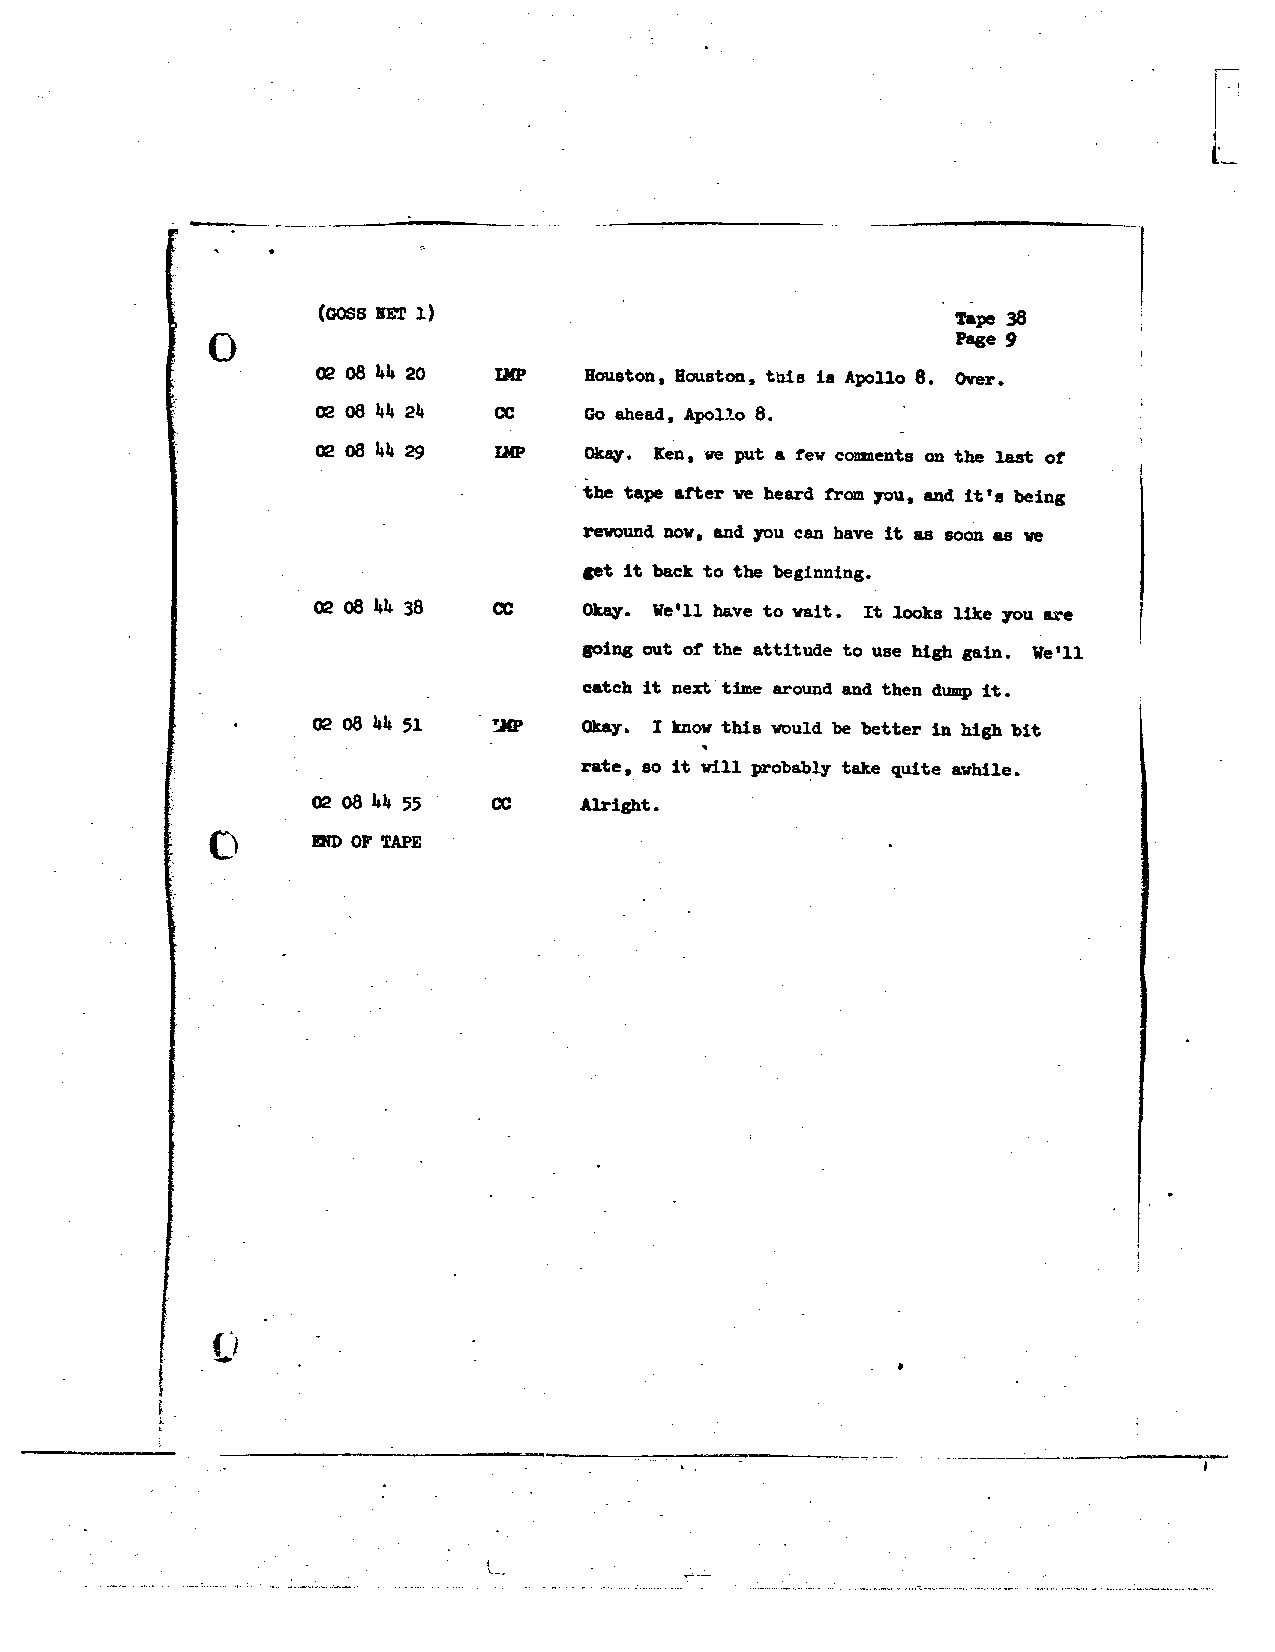 Page 302 of Apollo 8’s original transcript